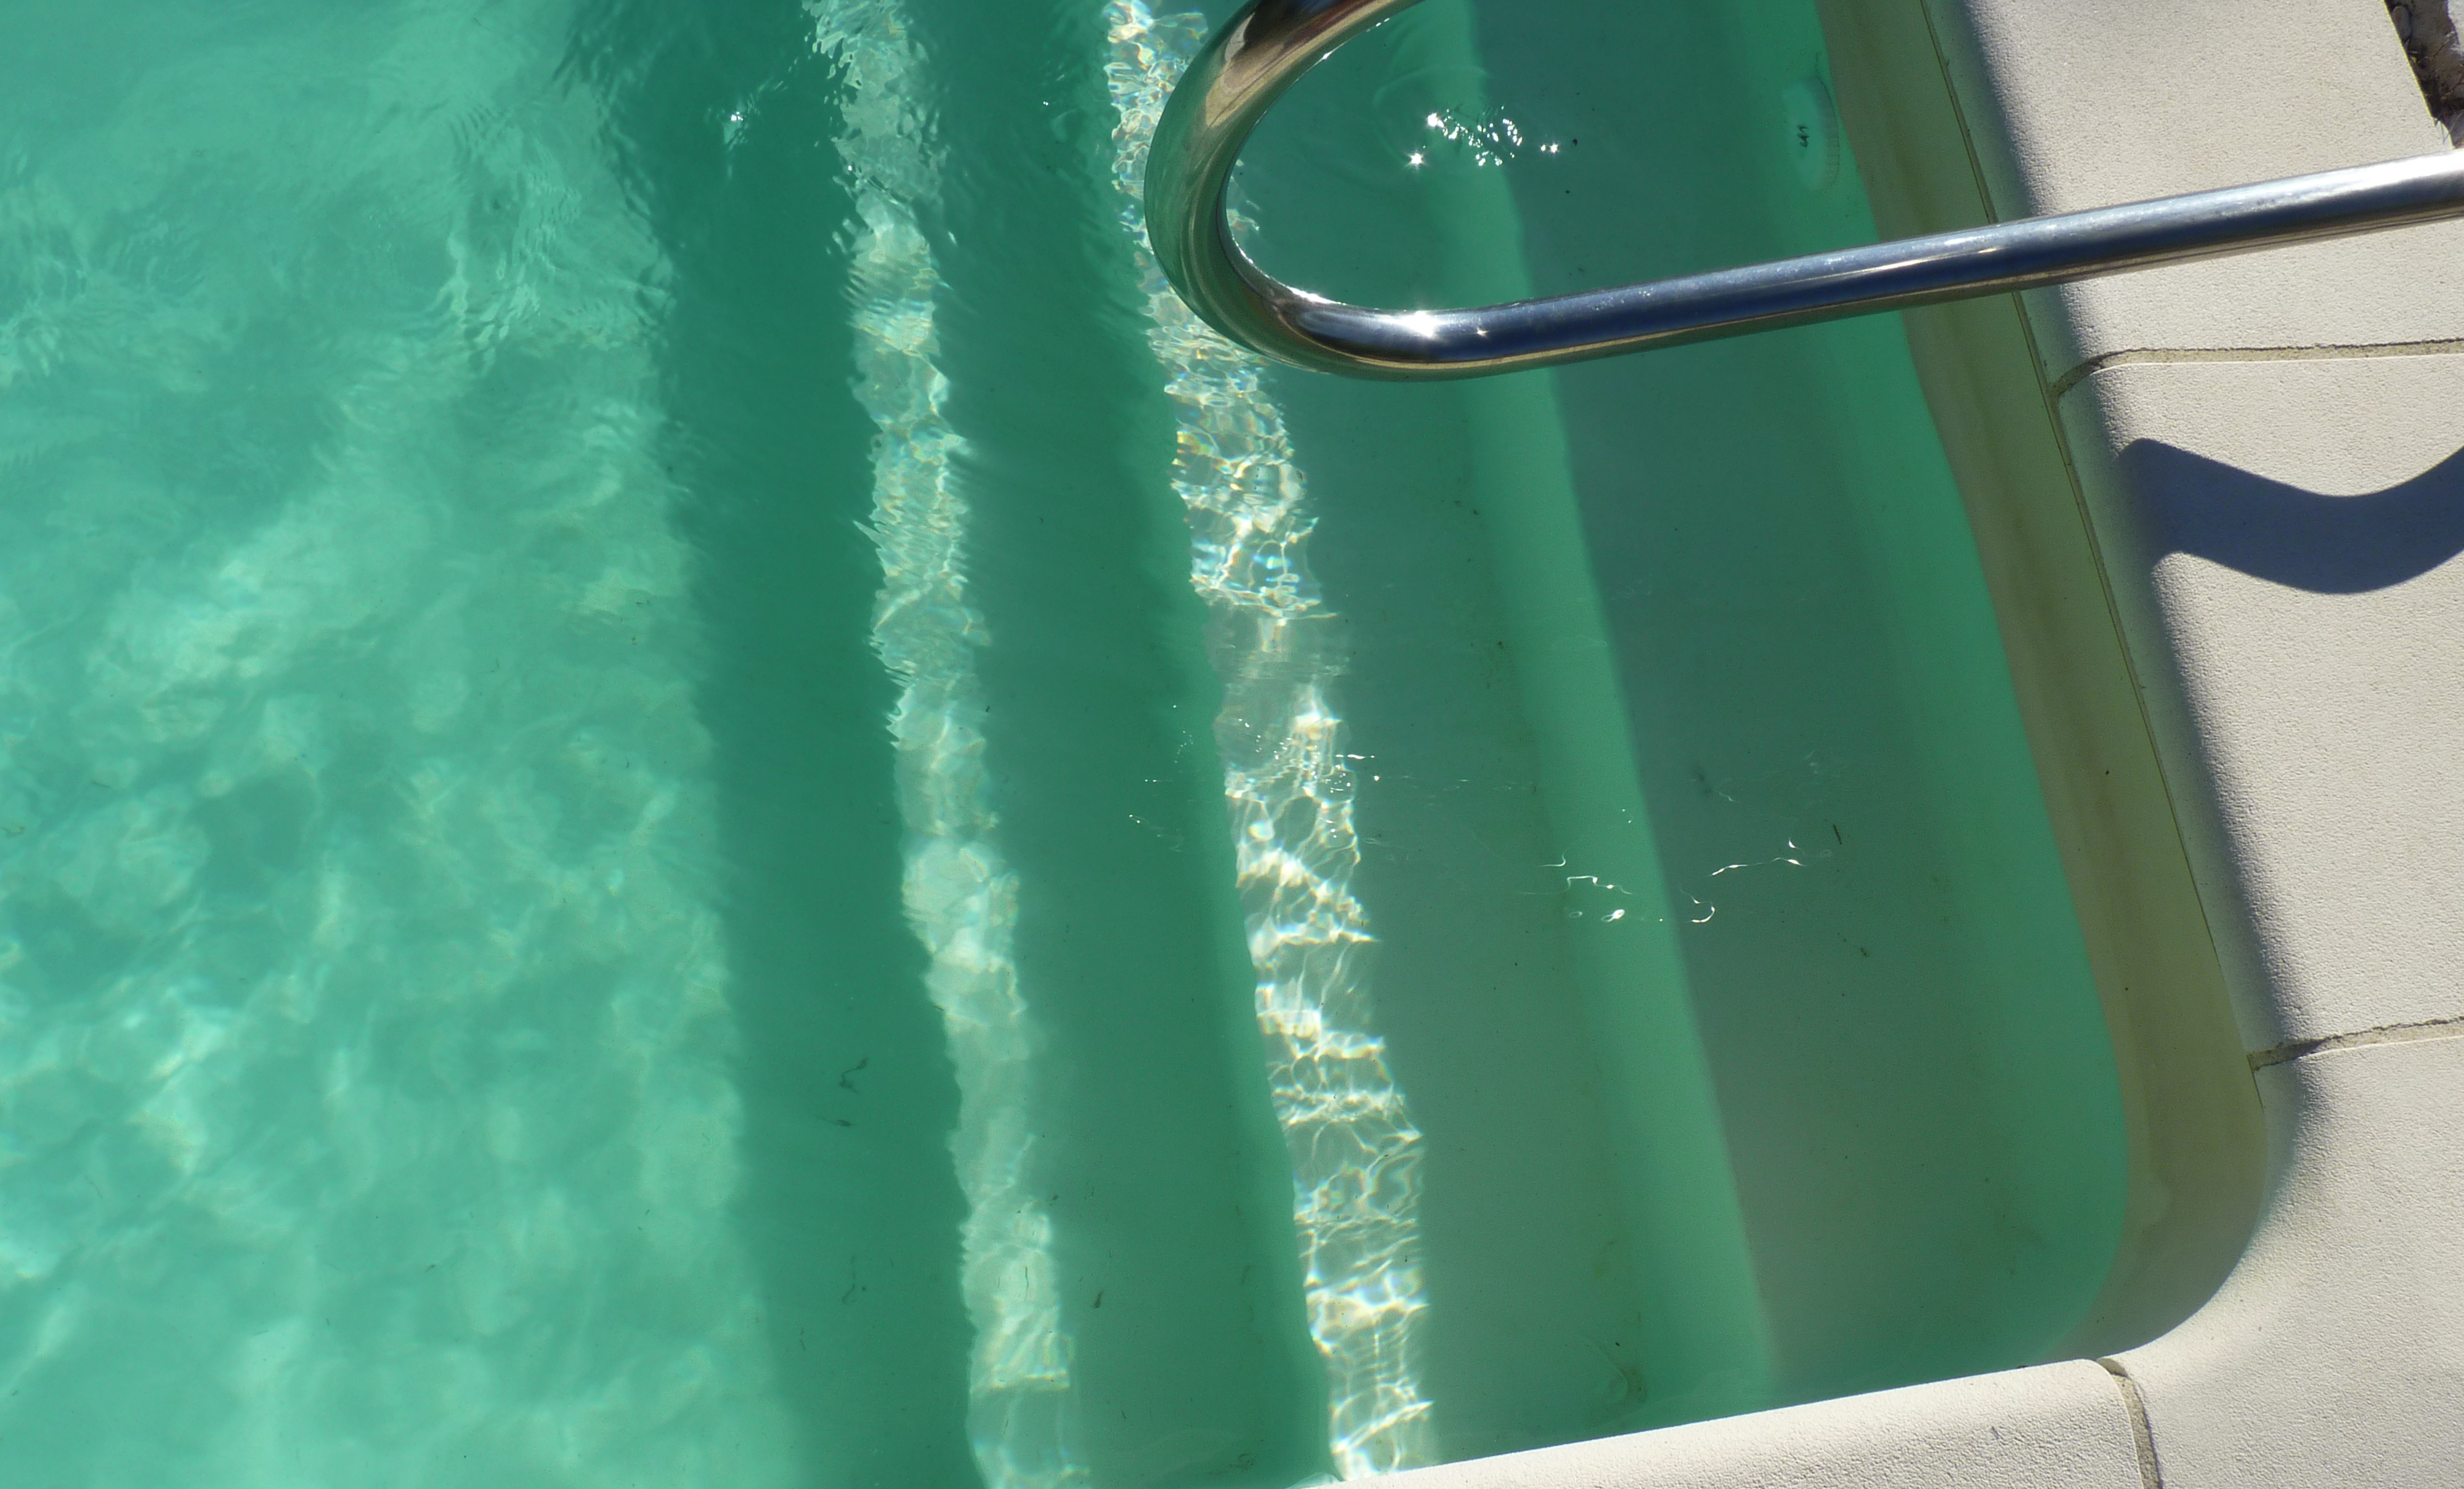 eau piscine nettoyée après hivernage grâce à Biofloc-plus produit d'origine naturelle